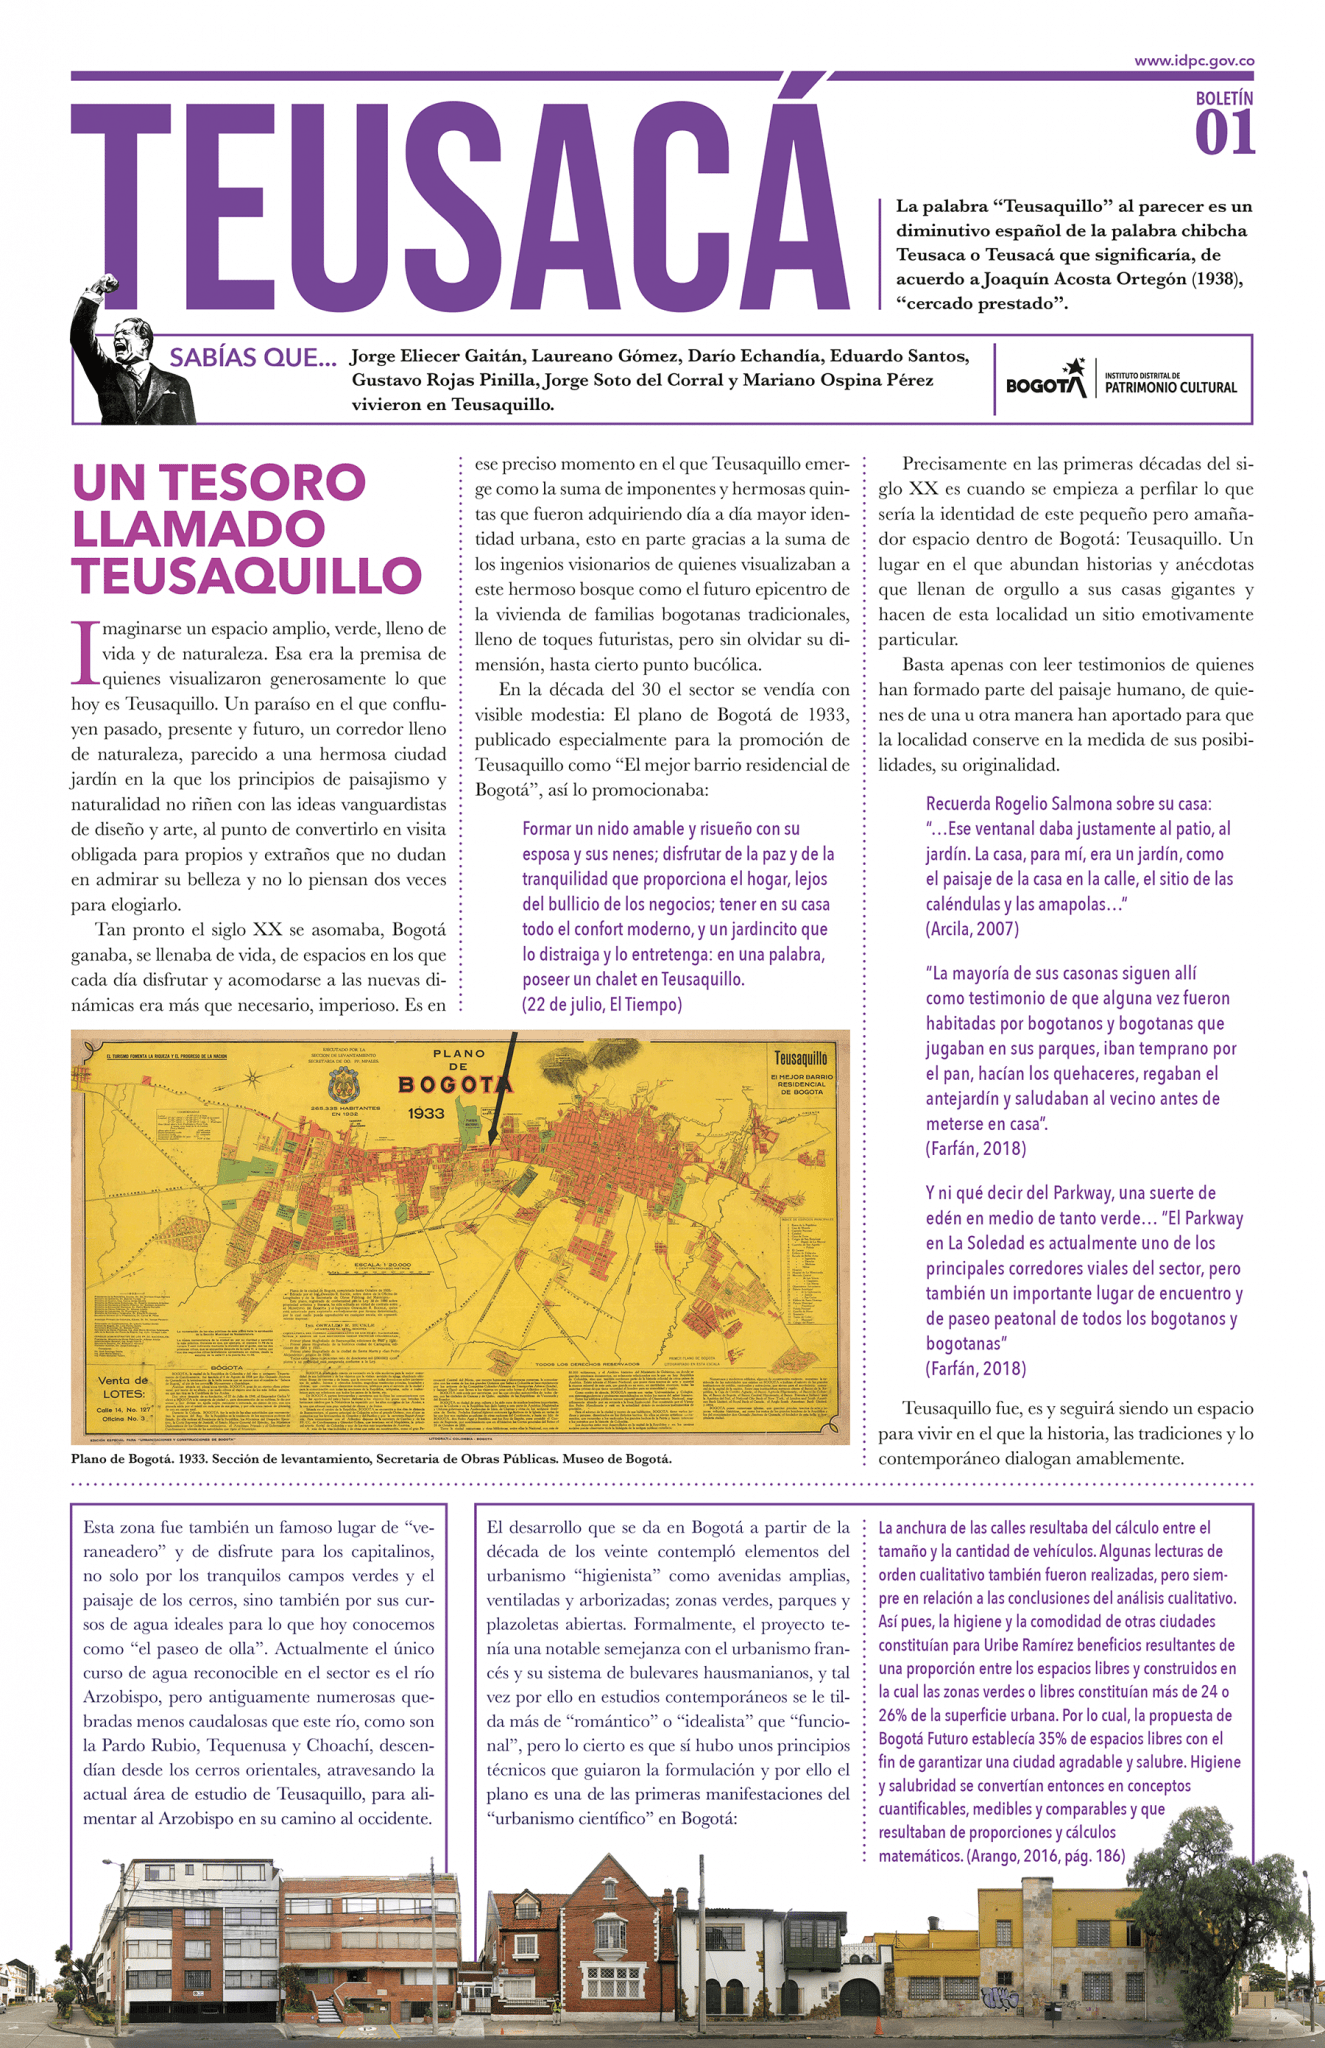 ¿Sabías que Teusaquillo es un diminutivo español de la palabra chibcha Teusacá? Conoce más de la localidad con el boletín y periódico Teusacá del IDPC.